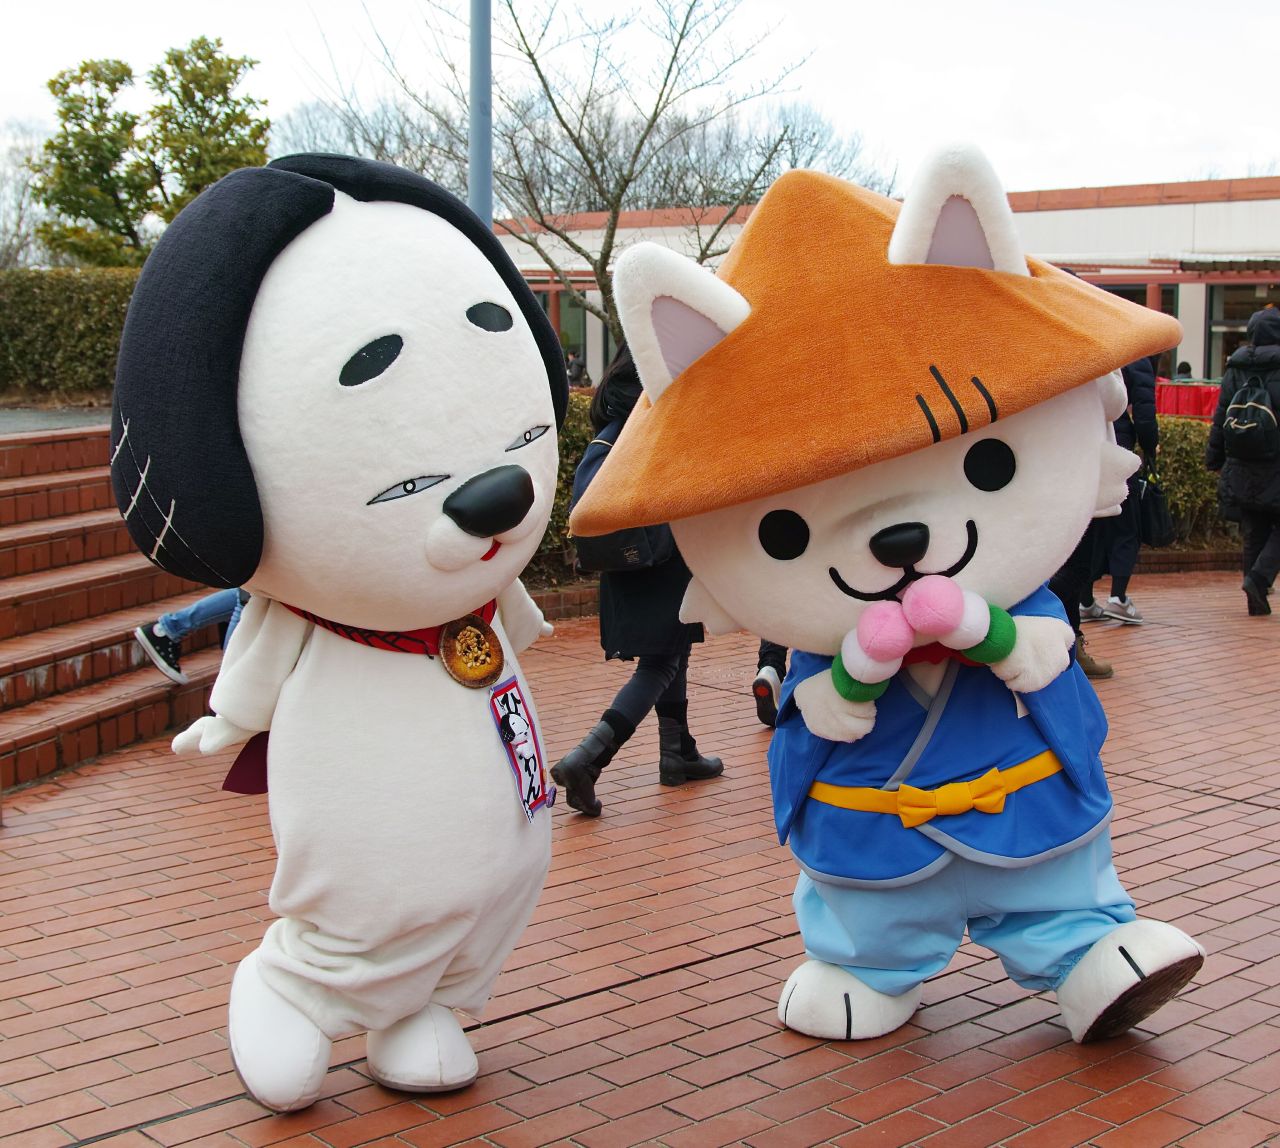 Japanese Mascot Photograph Yuruchara Jp ゆるキャラ いせわんこ 三重県菓子工業組合 ひやわん 三重 県名張市 とのツーショット